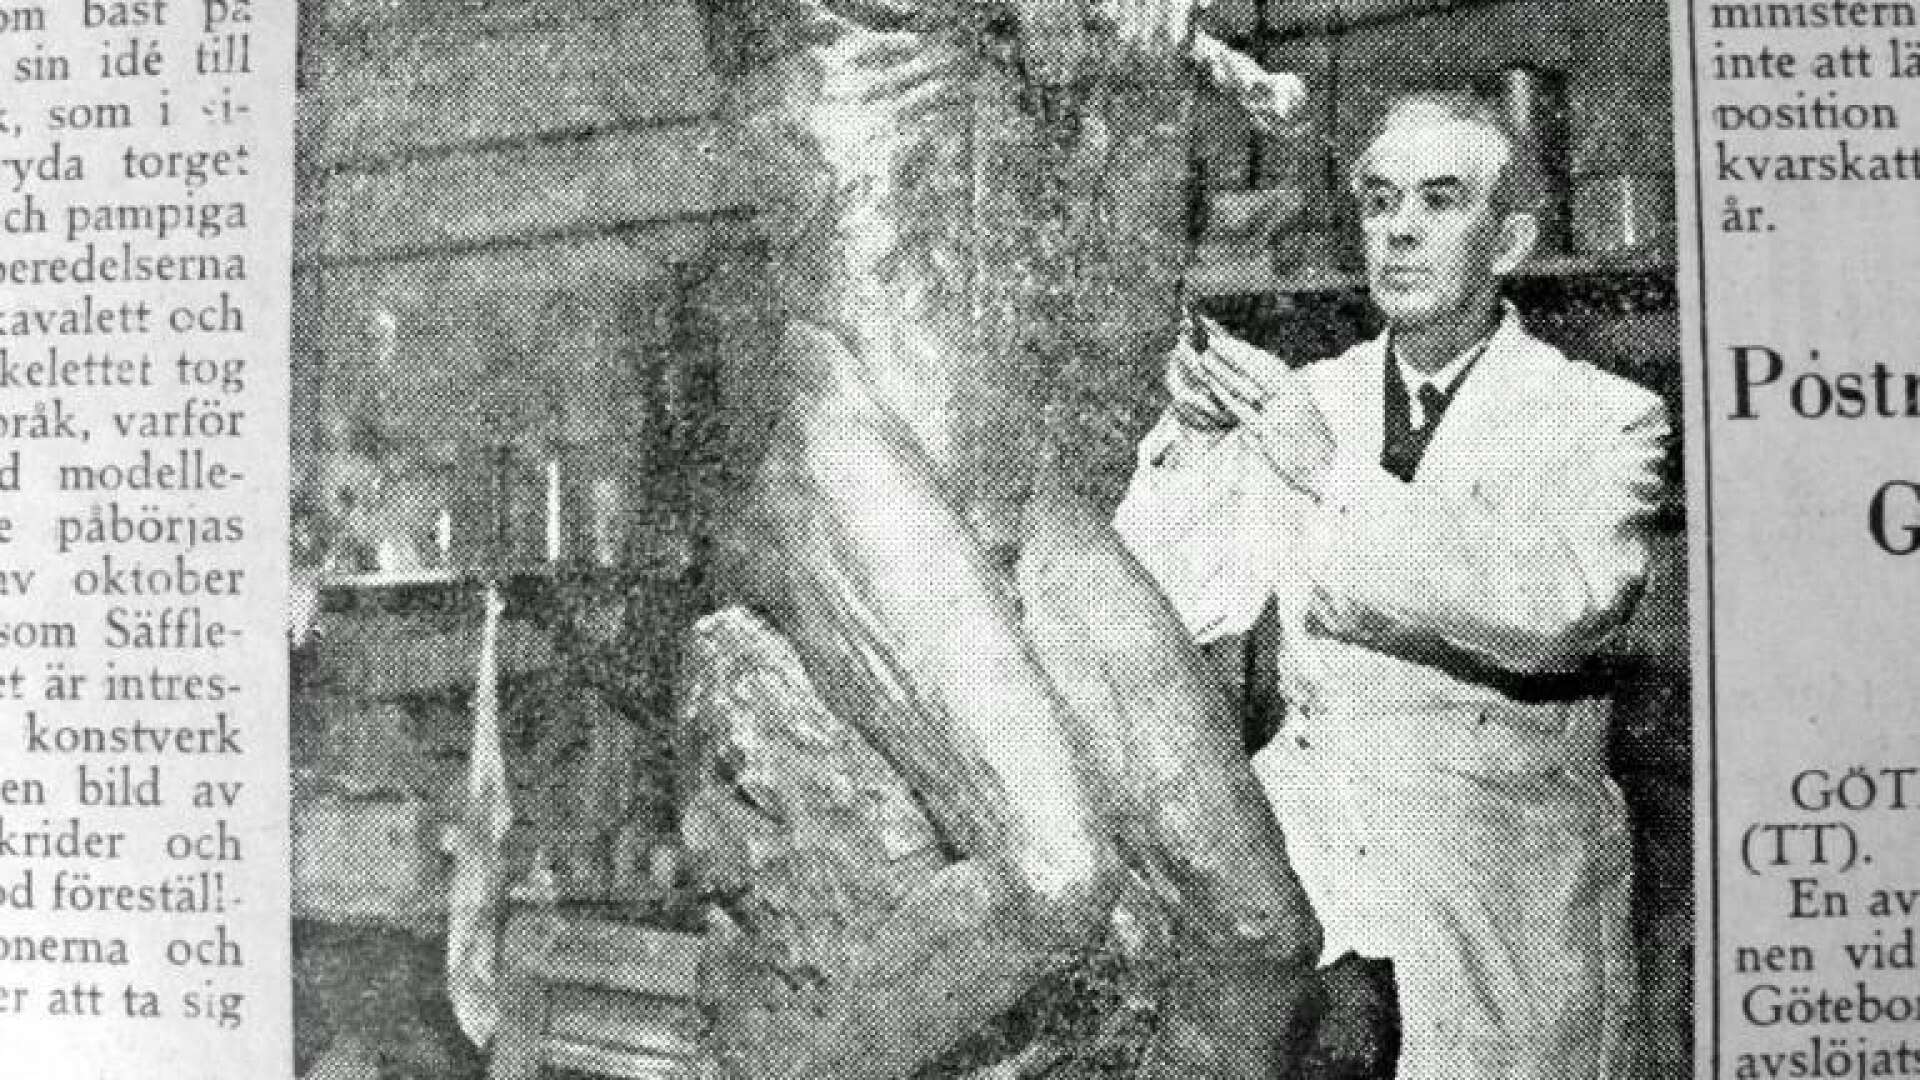 När arbetet med skulpturen Näcken pågick gjorde Säffle-Tidningen ett besök i ateljén. Vitalis Gustafsson var stolt över uppdraget. Tyvärr fick han aldrig se resultatet. Han avled innan hans skulptur kom på plats på Kanaltorget.